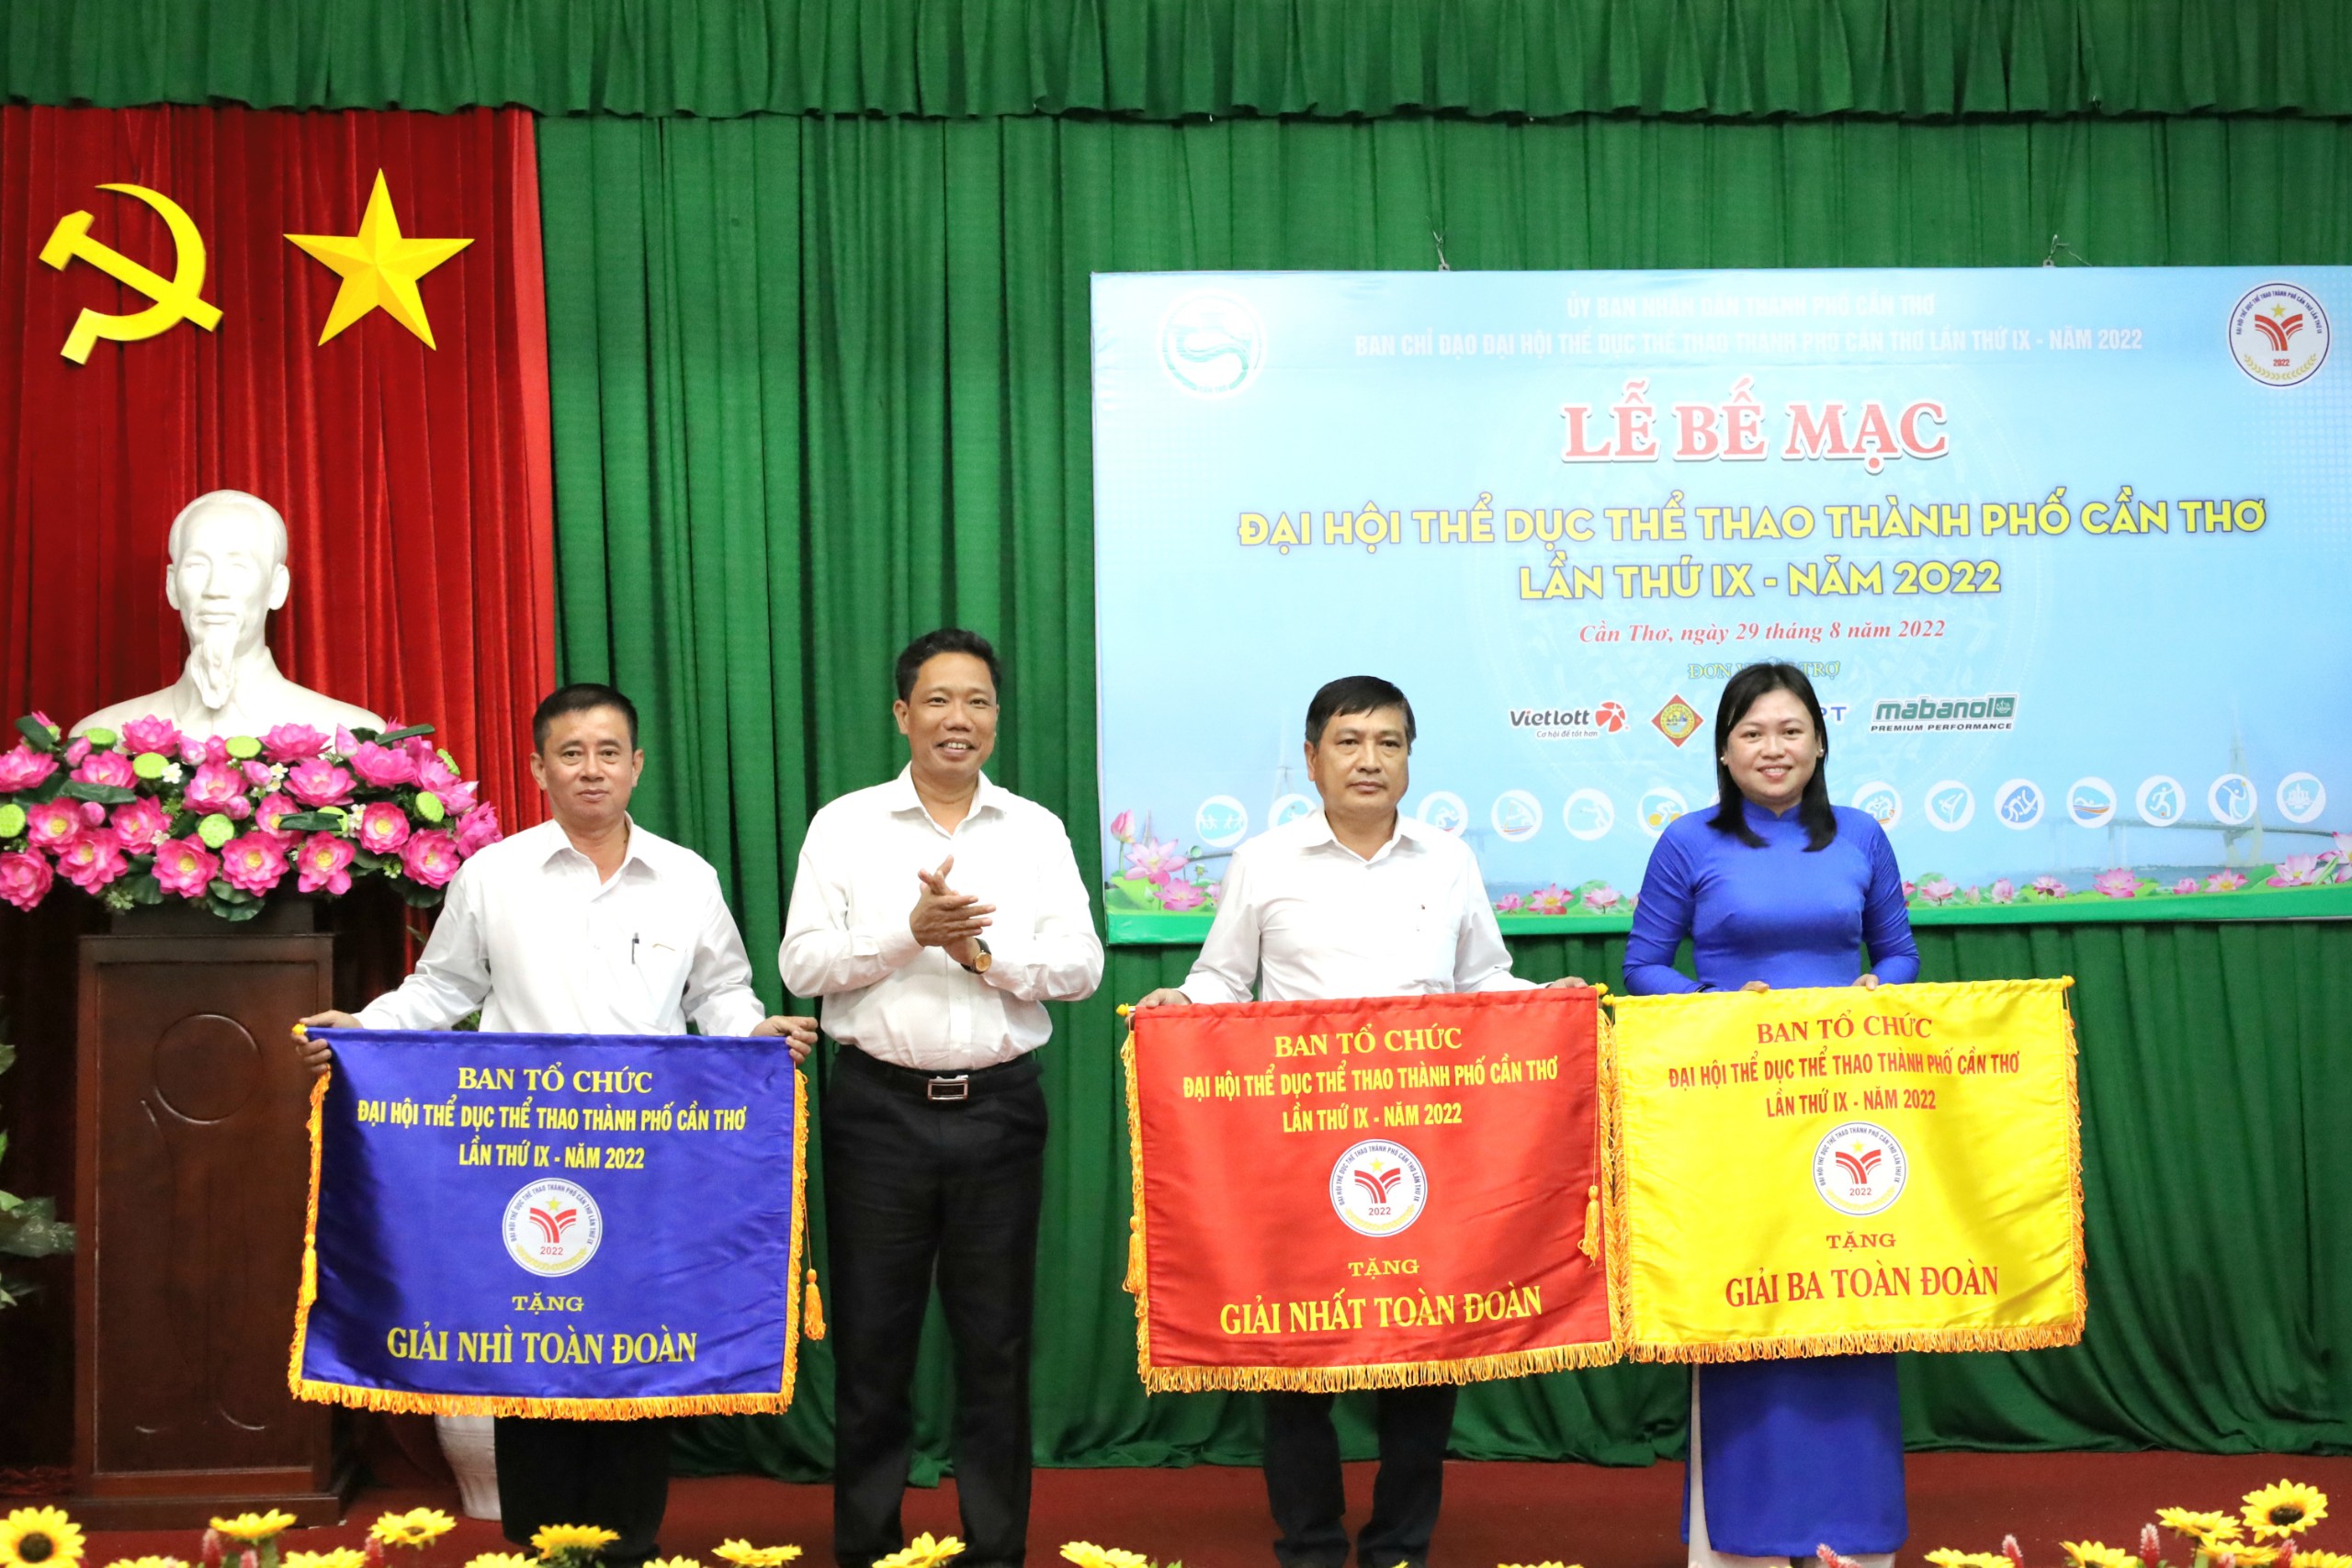 Ông Nguyễn Thực Hiện - Phó Chủ tịch UBND TP. Cần Thơ trao cờ toàn đoàn cho các đơn vị đạt thành tích xuất sắc nhất tại đại hội.